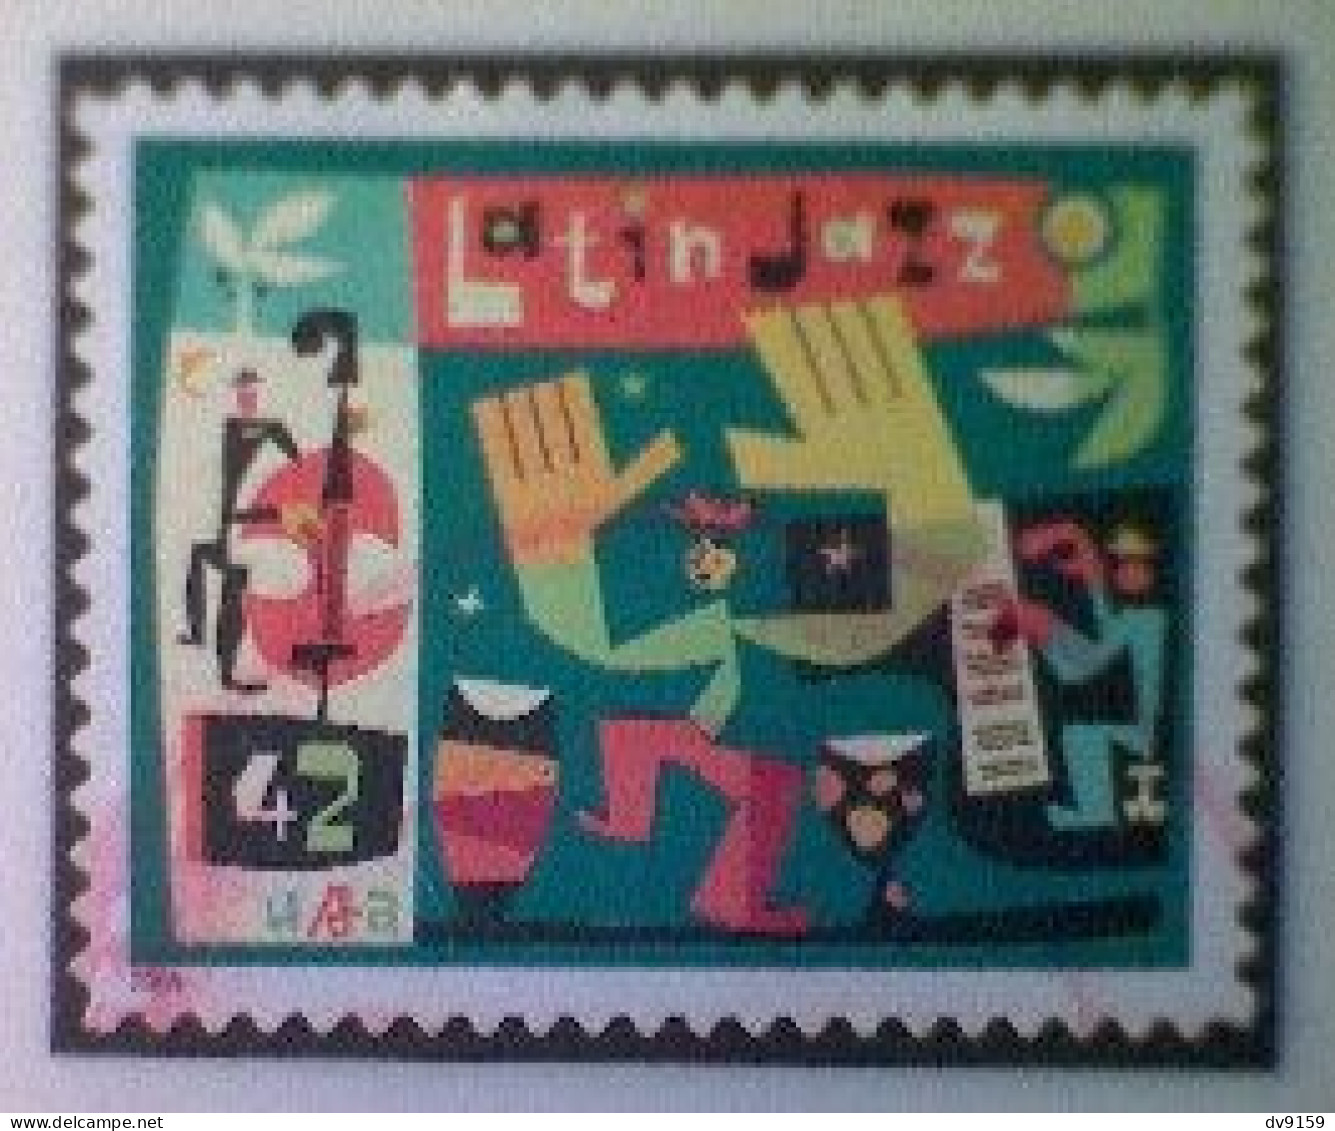 United States, Scott #4349, Used(o), 2008, Latin Jazz, 42¢, Multicolored - Usados